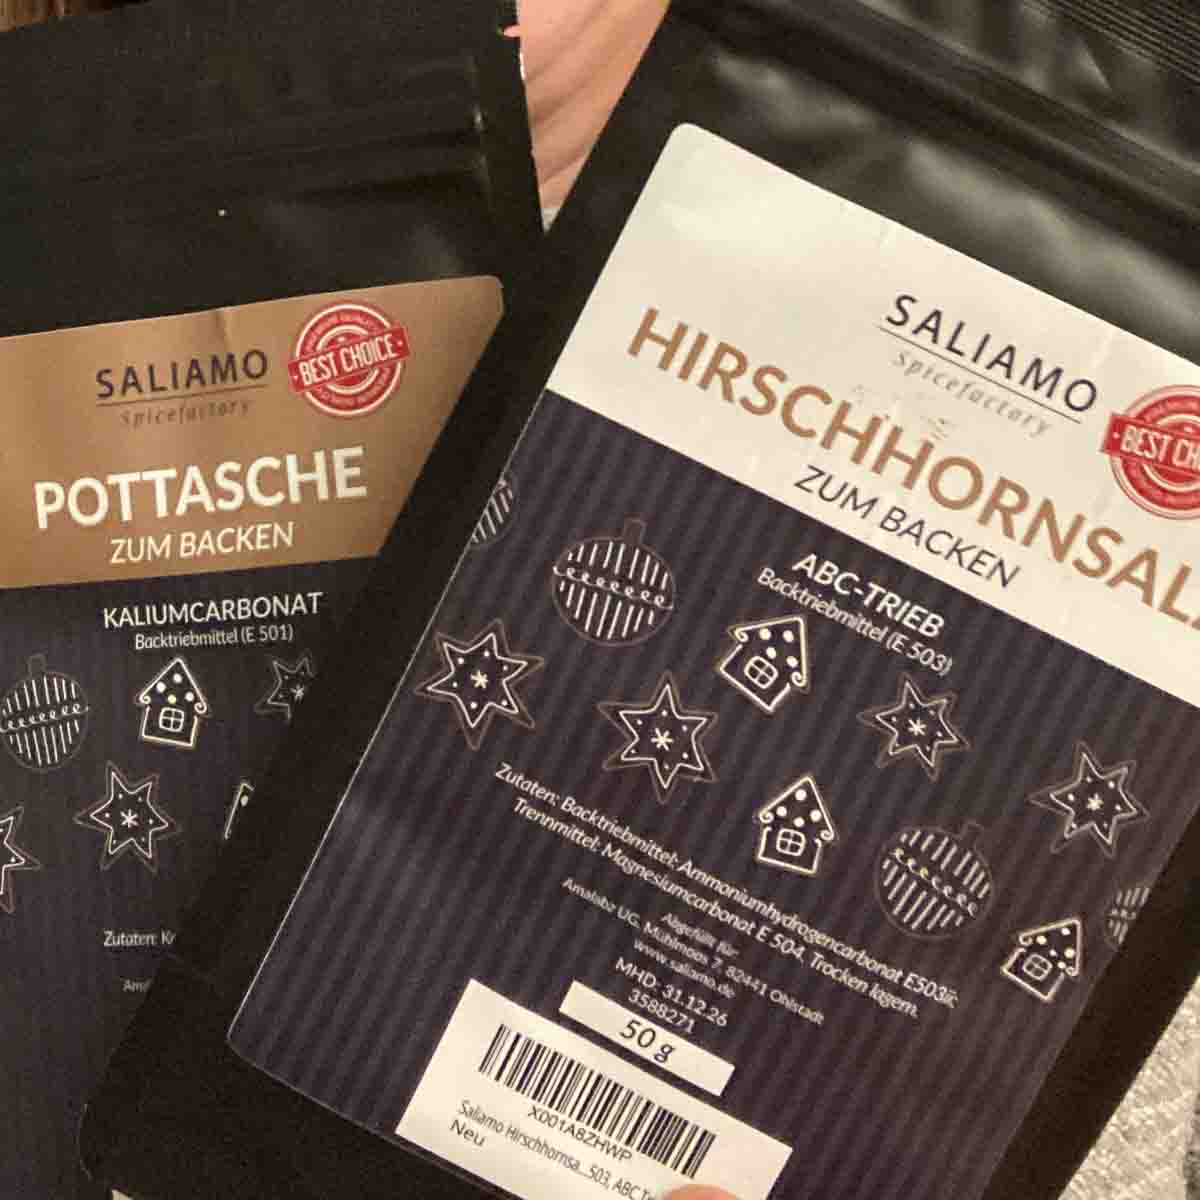 pottasche und Hirschhornsalz in Originalverpackung der Marke Saliamo.